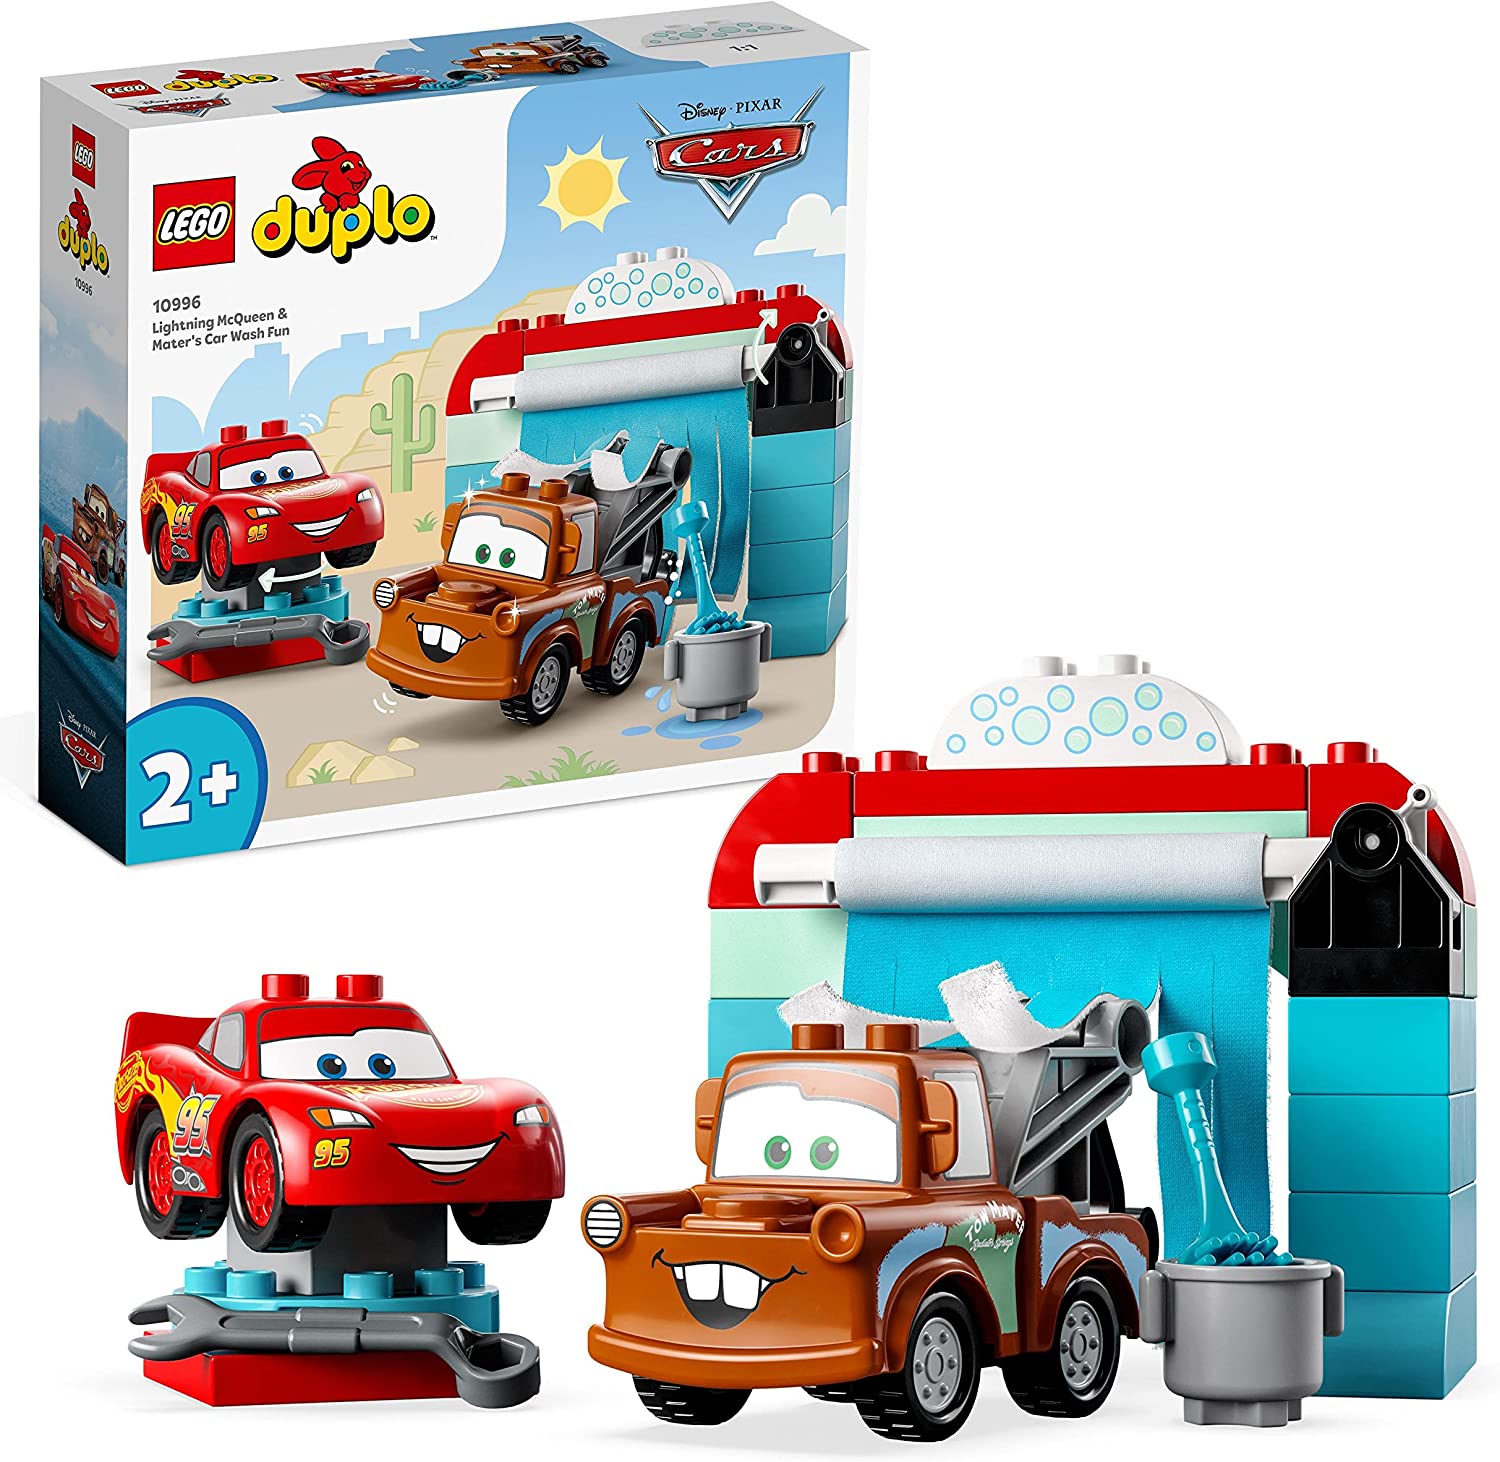 Lego 10996 DUPLO Disney and Pixar\'s Cars Lightning McQueen & Mater in der Waschanlage Spielzeugautos, Motorikspielzeug für Jungen und Mädchen ab 2 Jahren